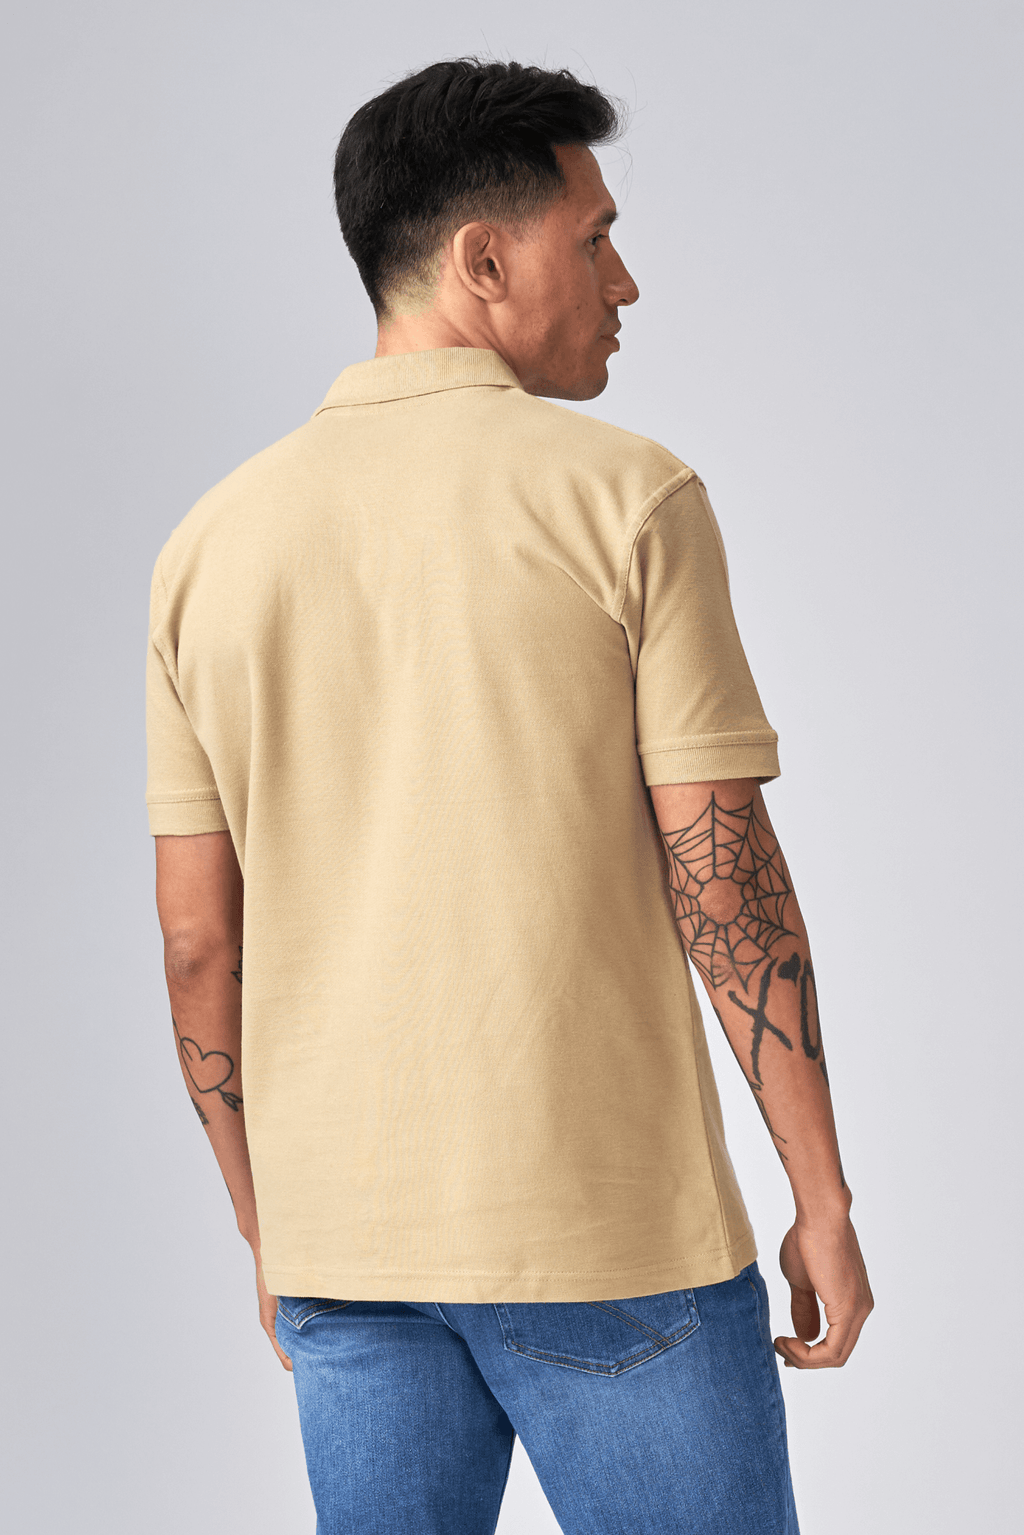 Basic Polo shirt- Khaki